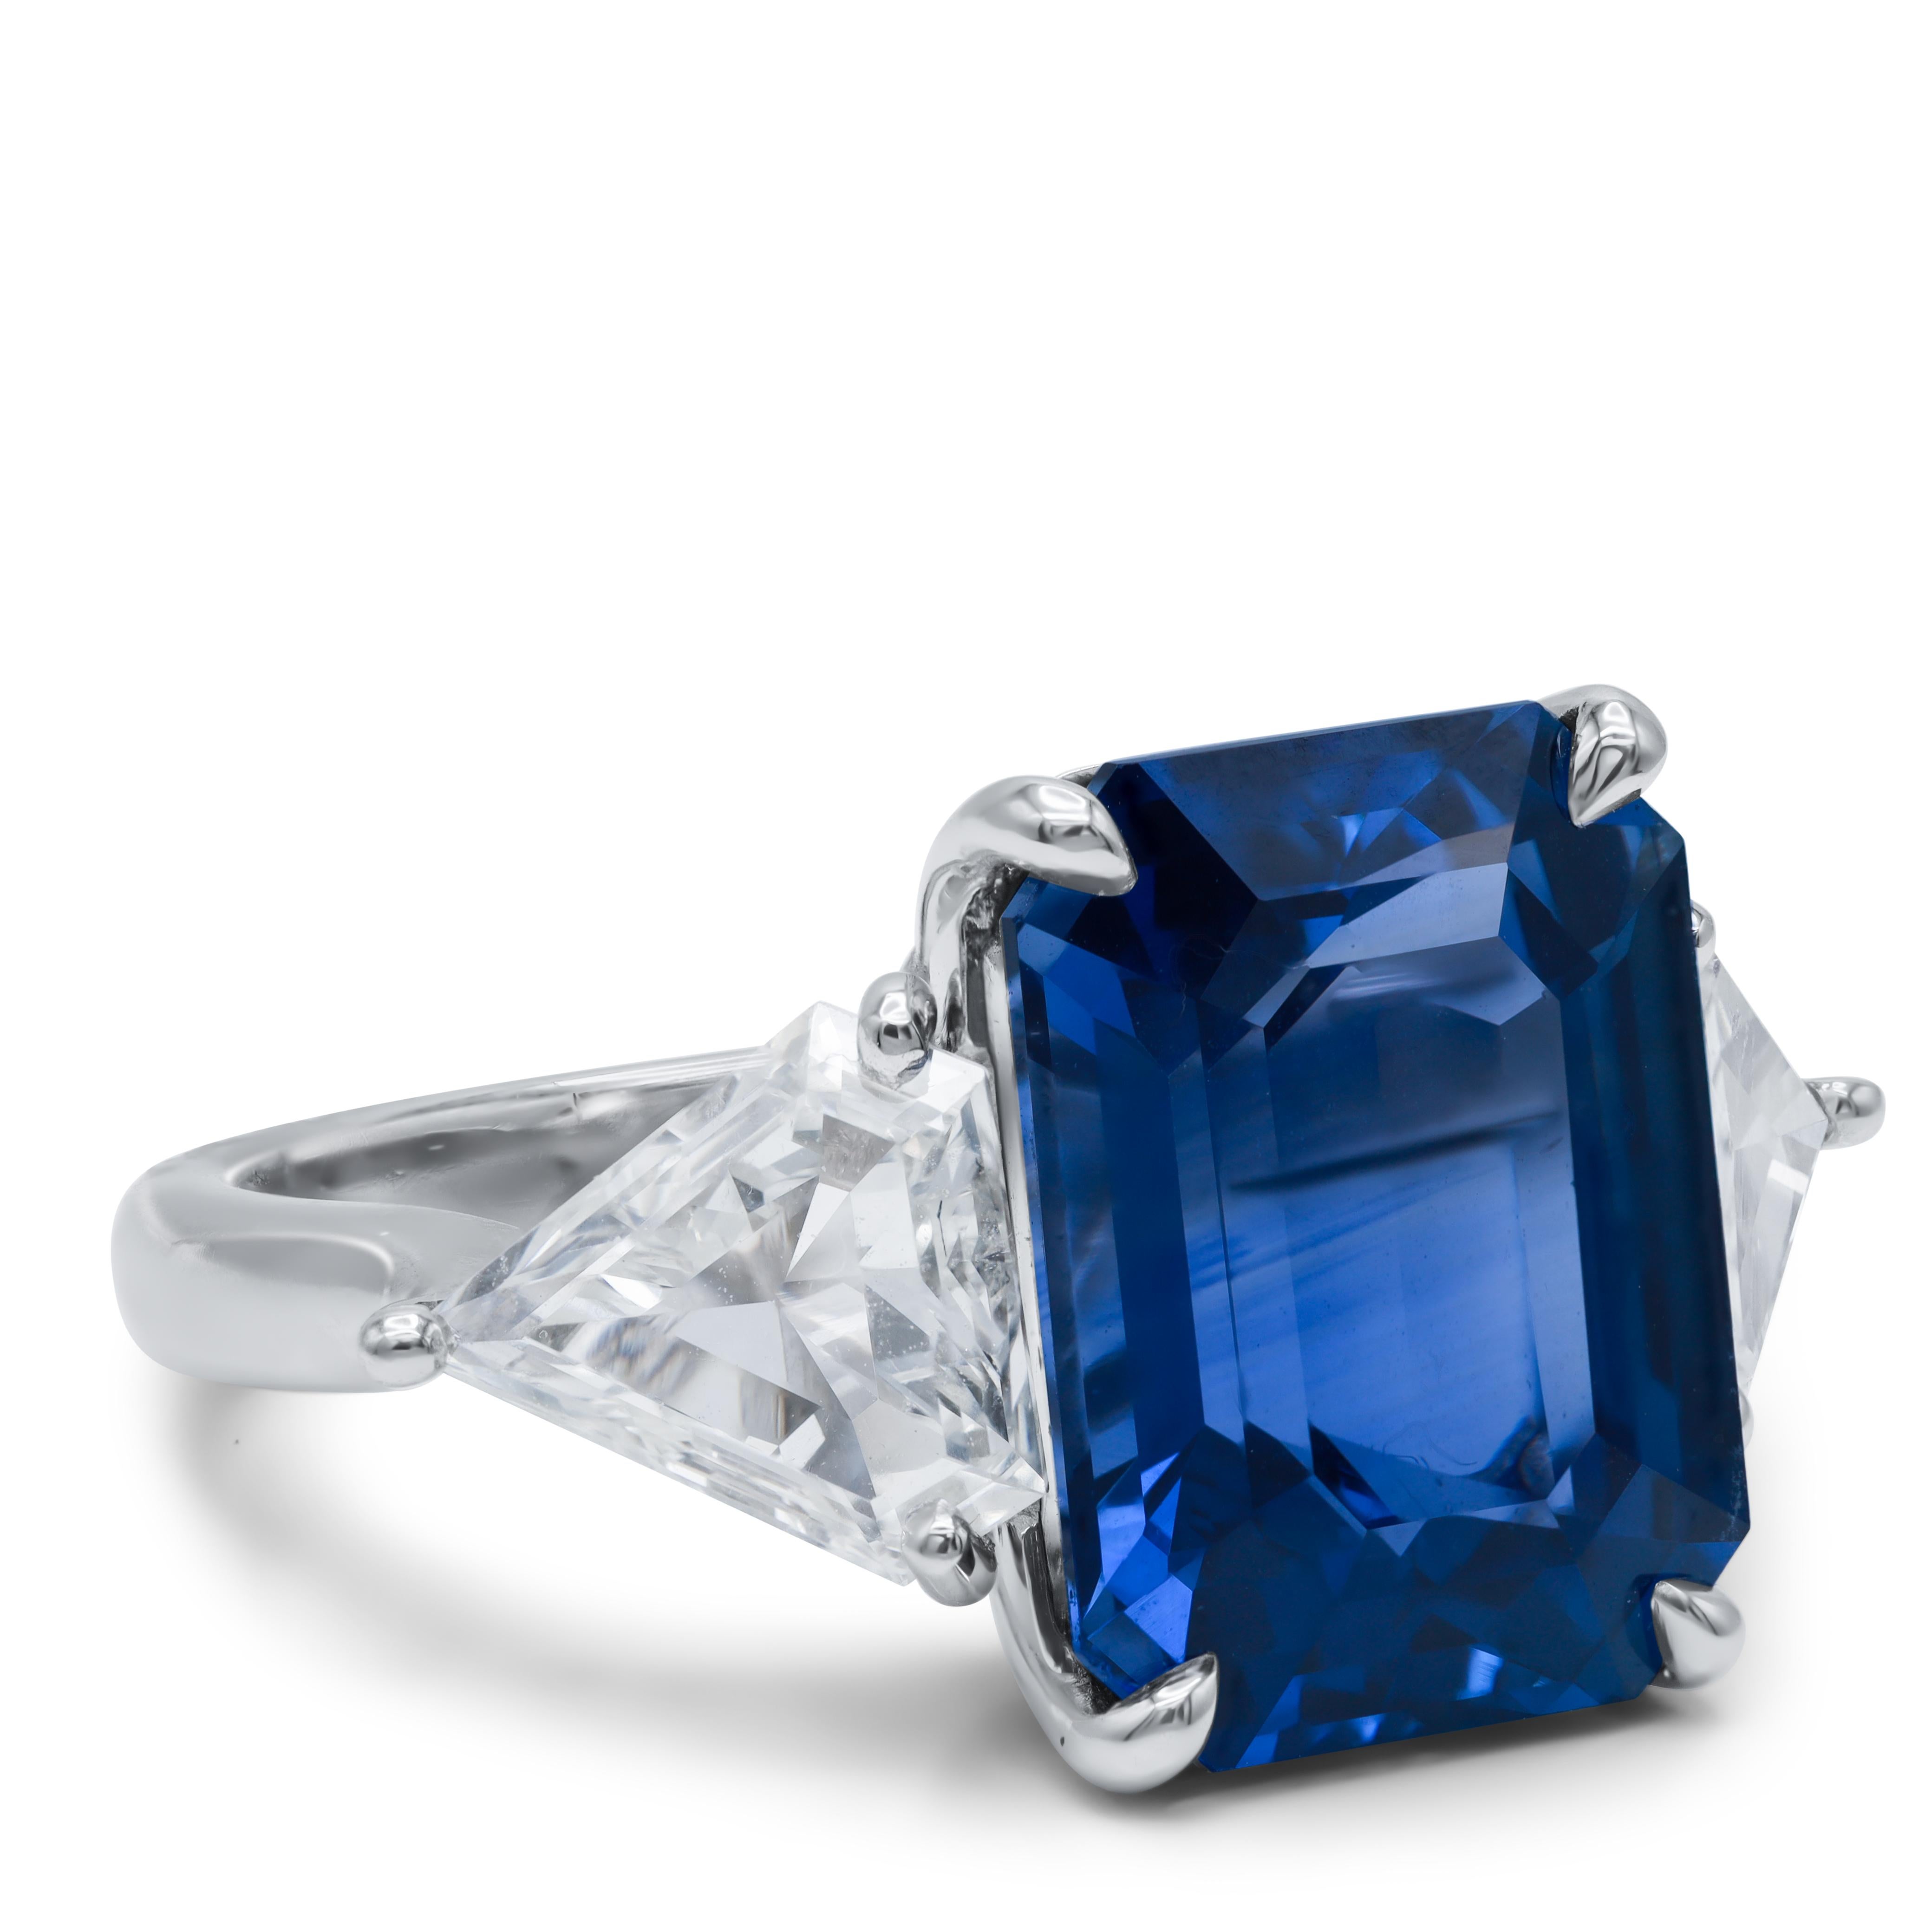 Bague en saphir et diamant en platine sertie d'un saphir bleu de Ceylan naturel du Sri Lanka de 9,85 ct certifié AGI  avec 2 diamants taillés en triangle sur son côté totalisant 2,15 cts de diamants